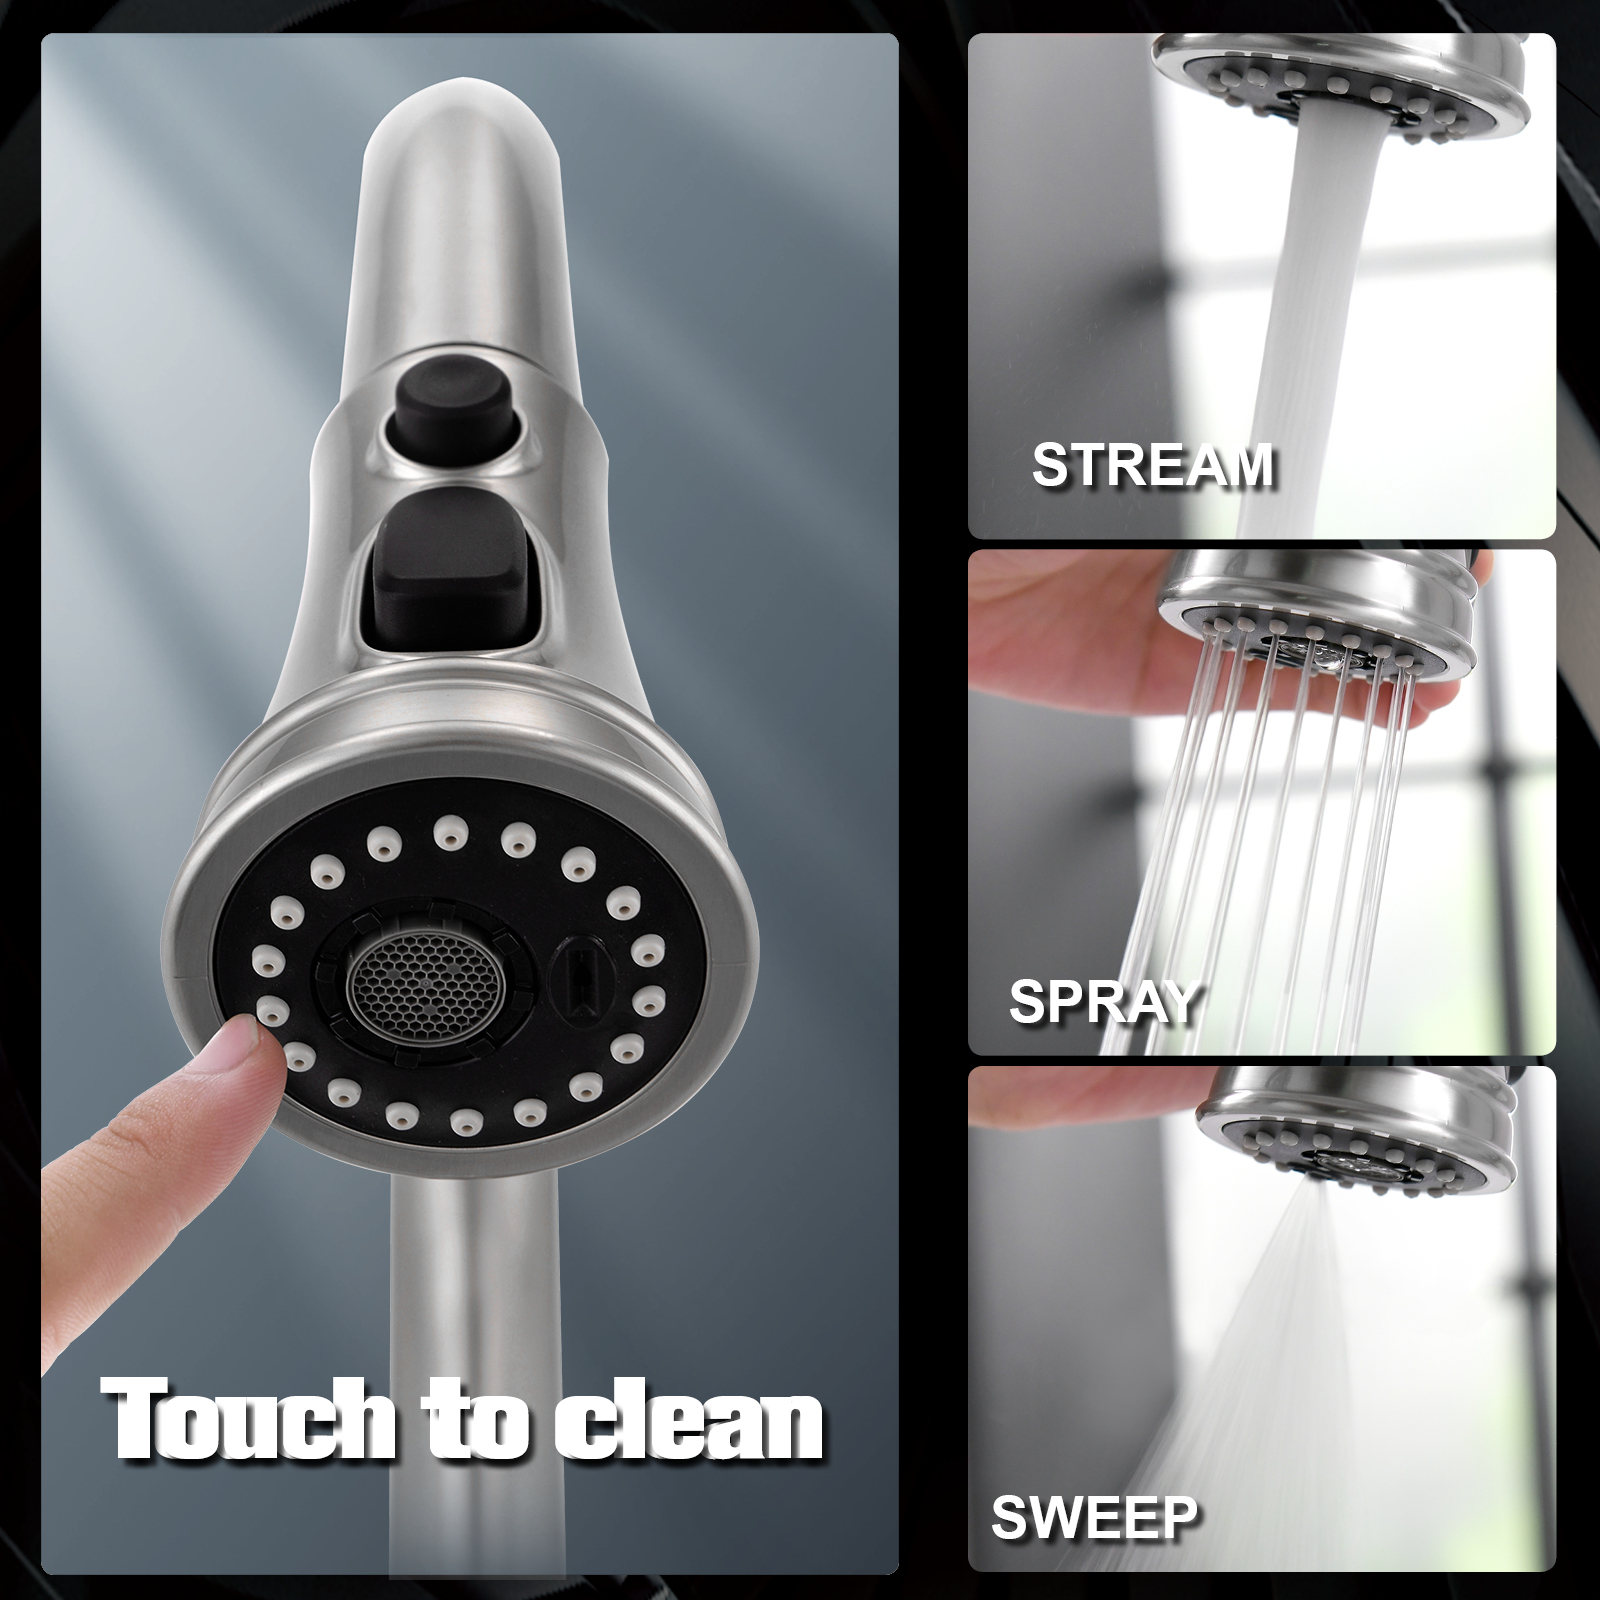 Capteur de robinet intelligent infrarouge Motionsense robinet de cuisine capteur tactile robinet de cuisine tirer vers le bas